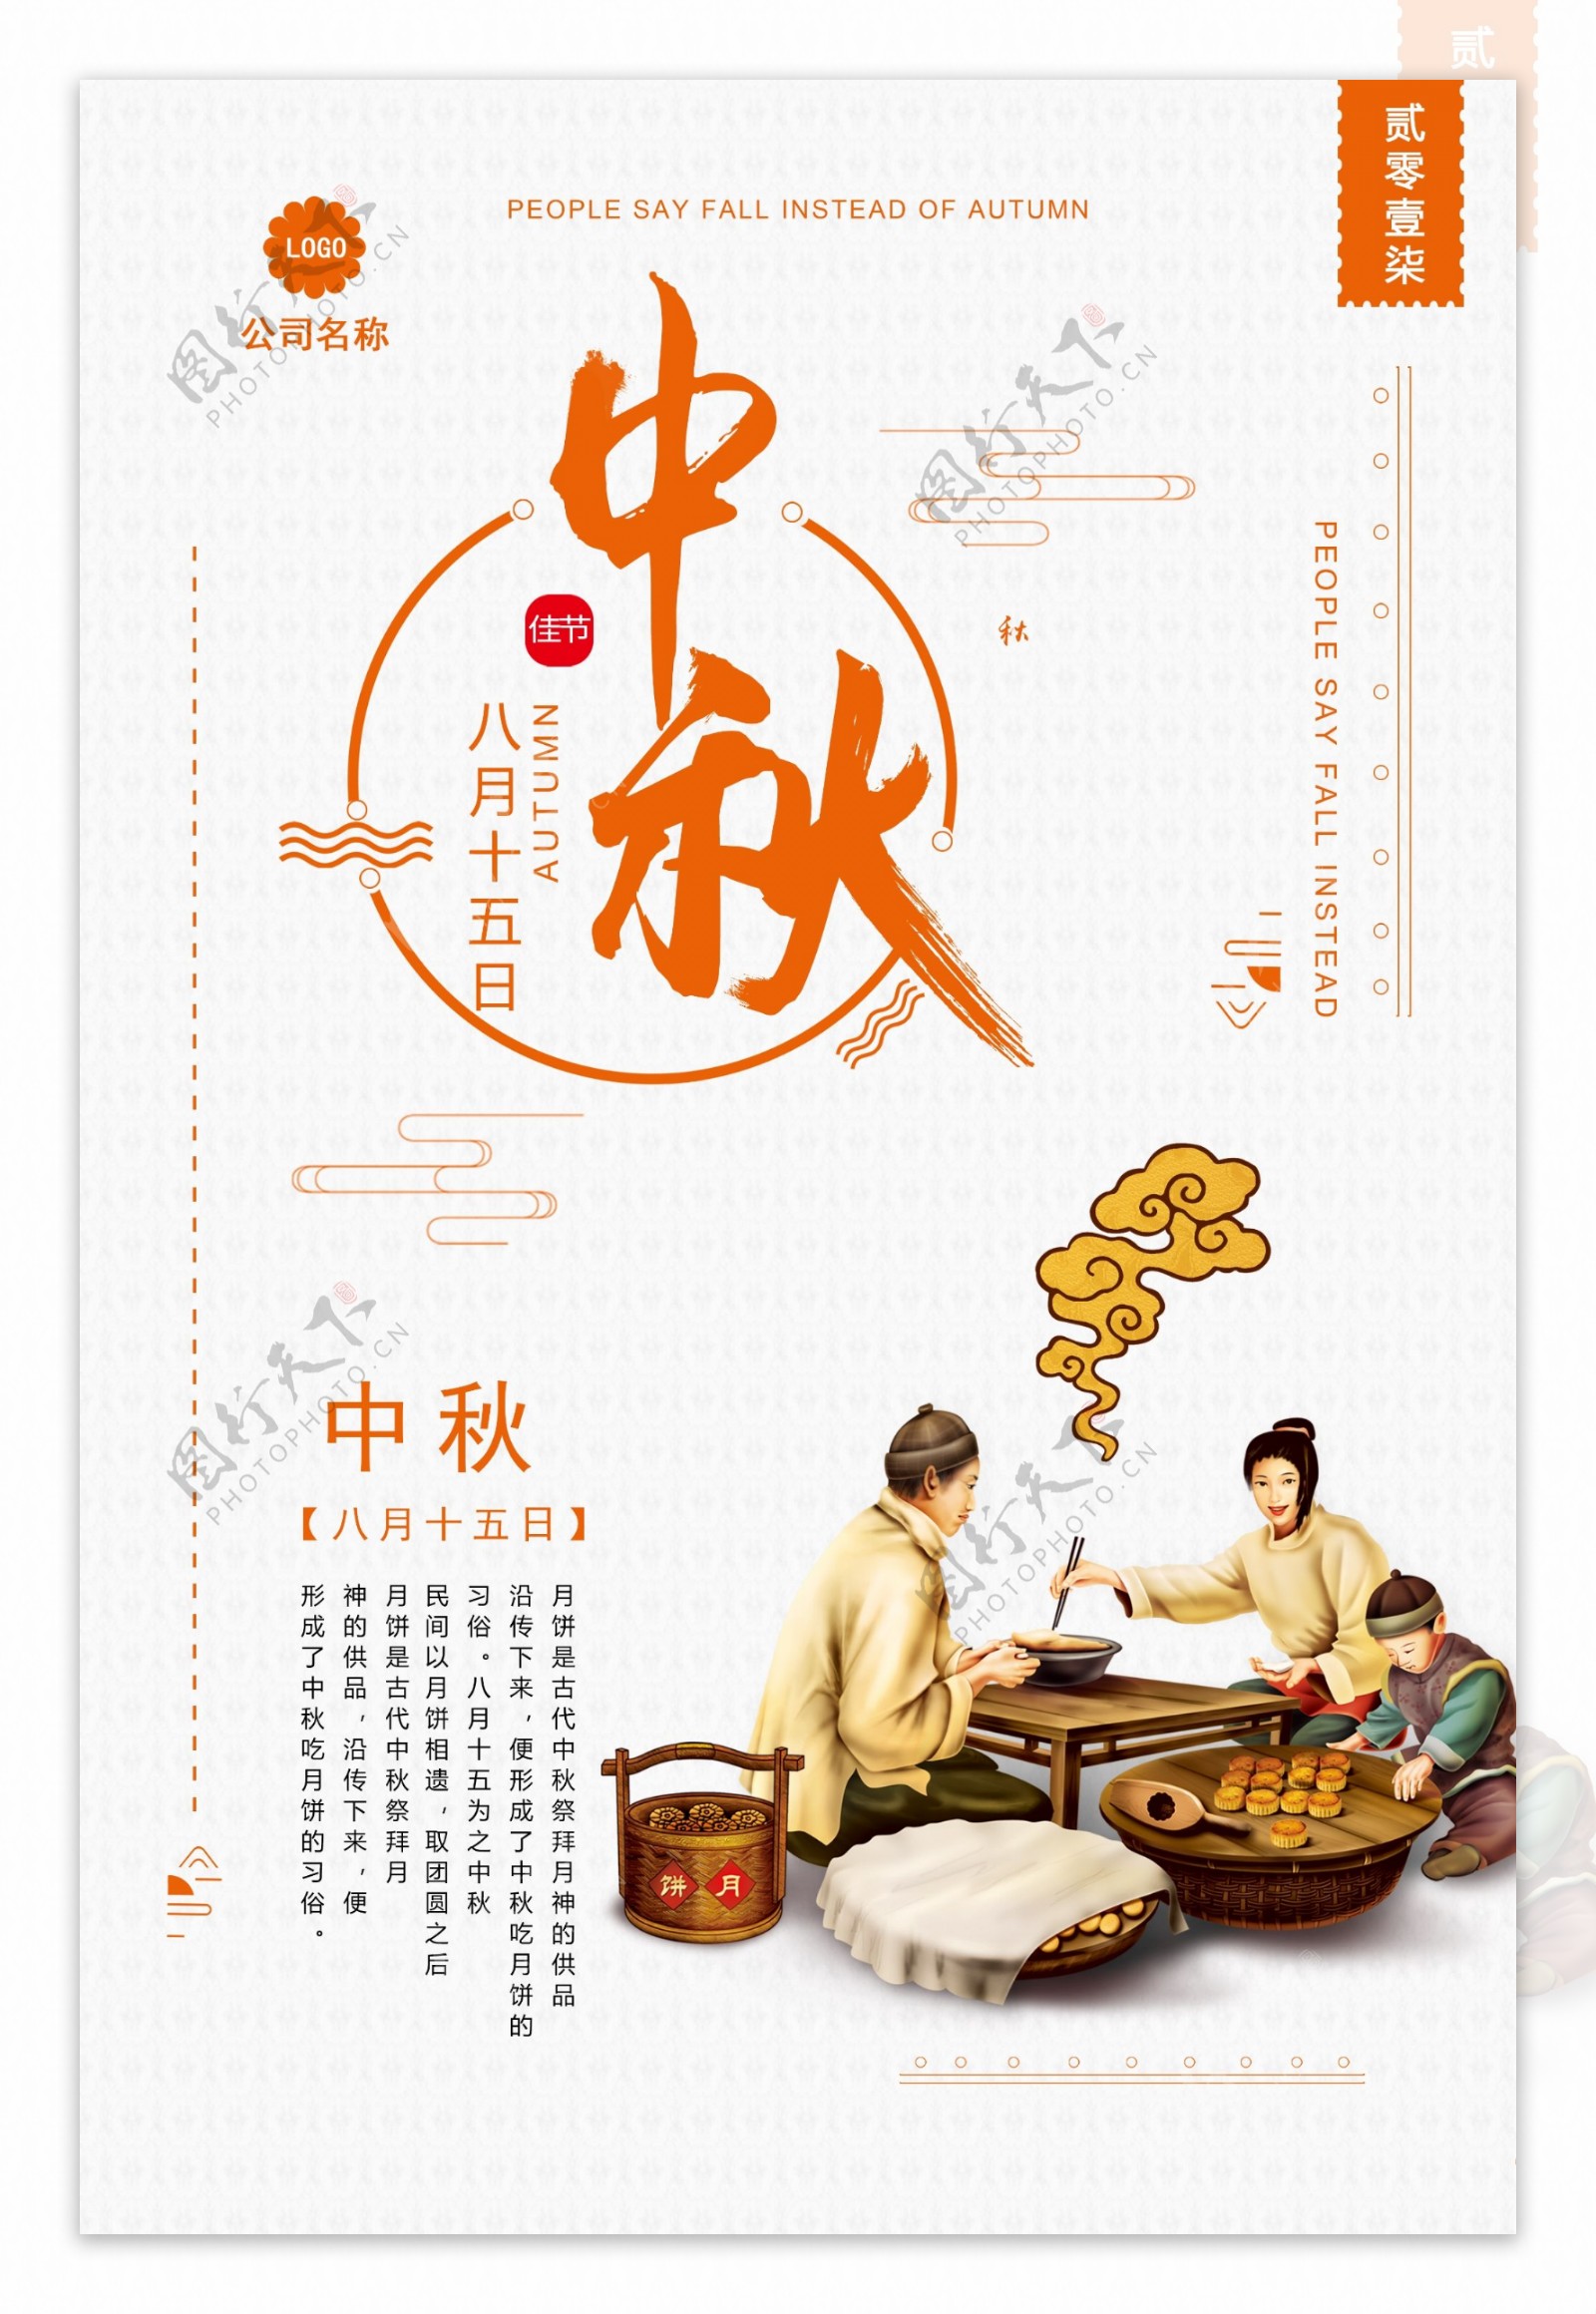 中国风中华味道中秋节月饼促销浓情中秋海报